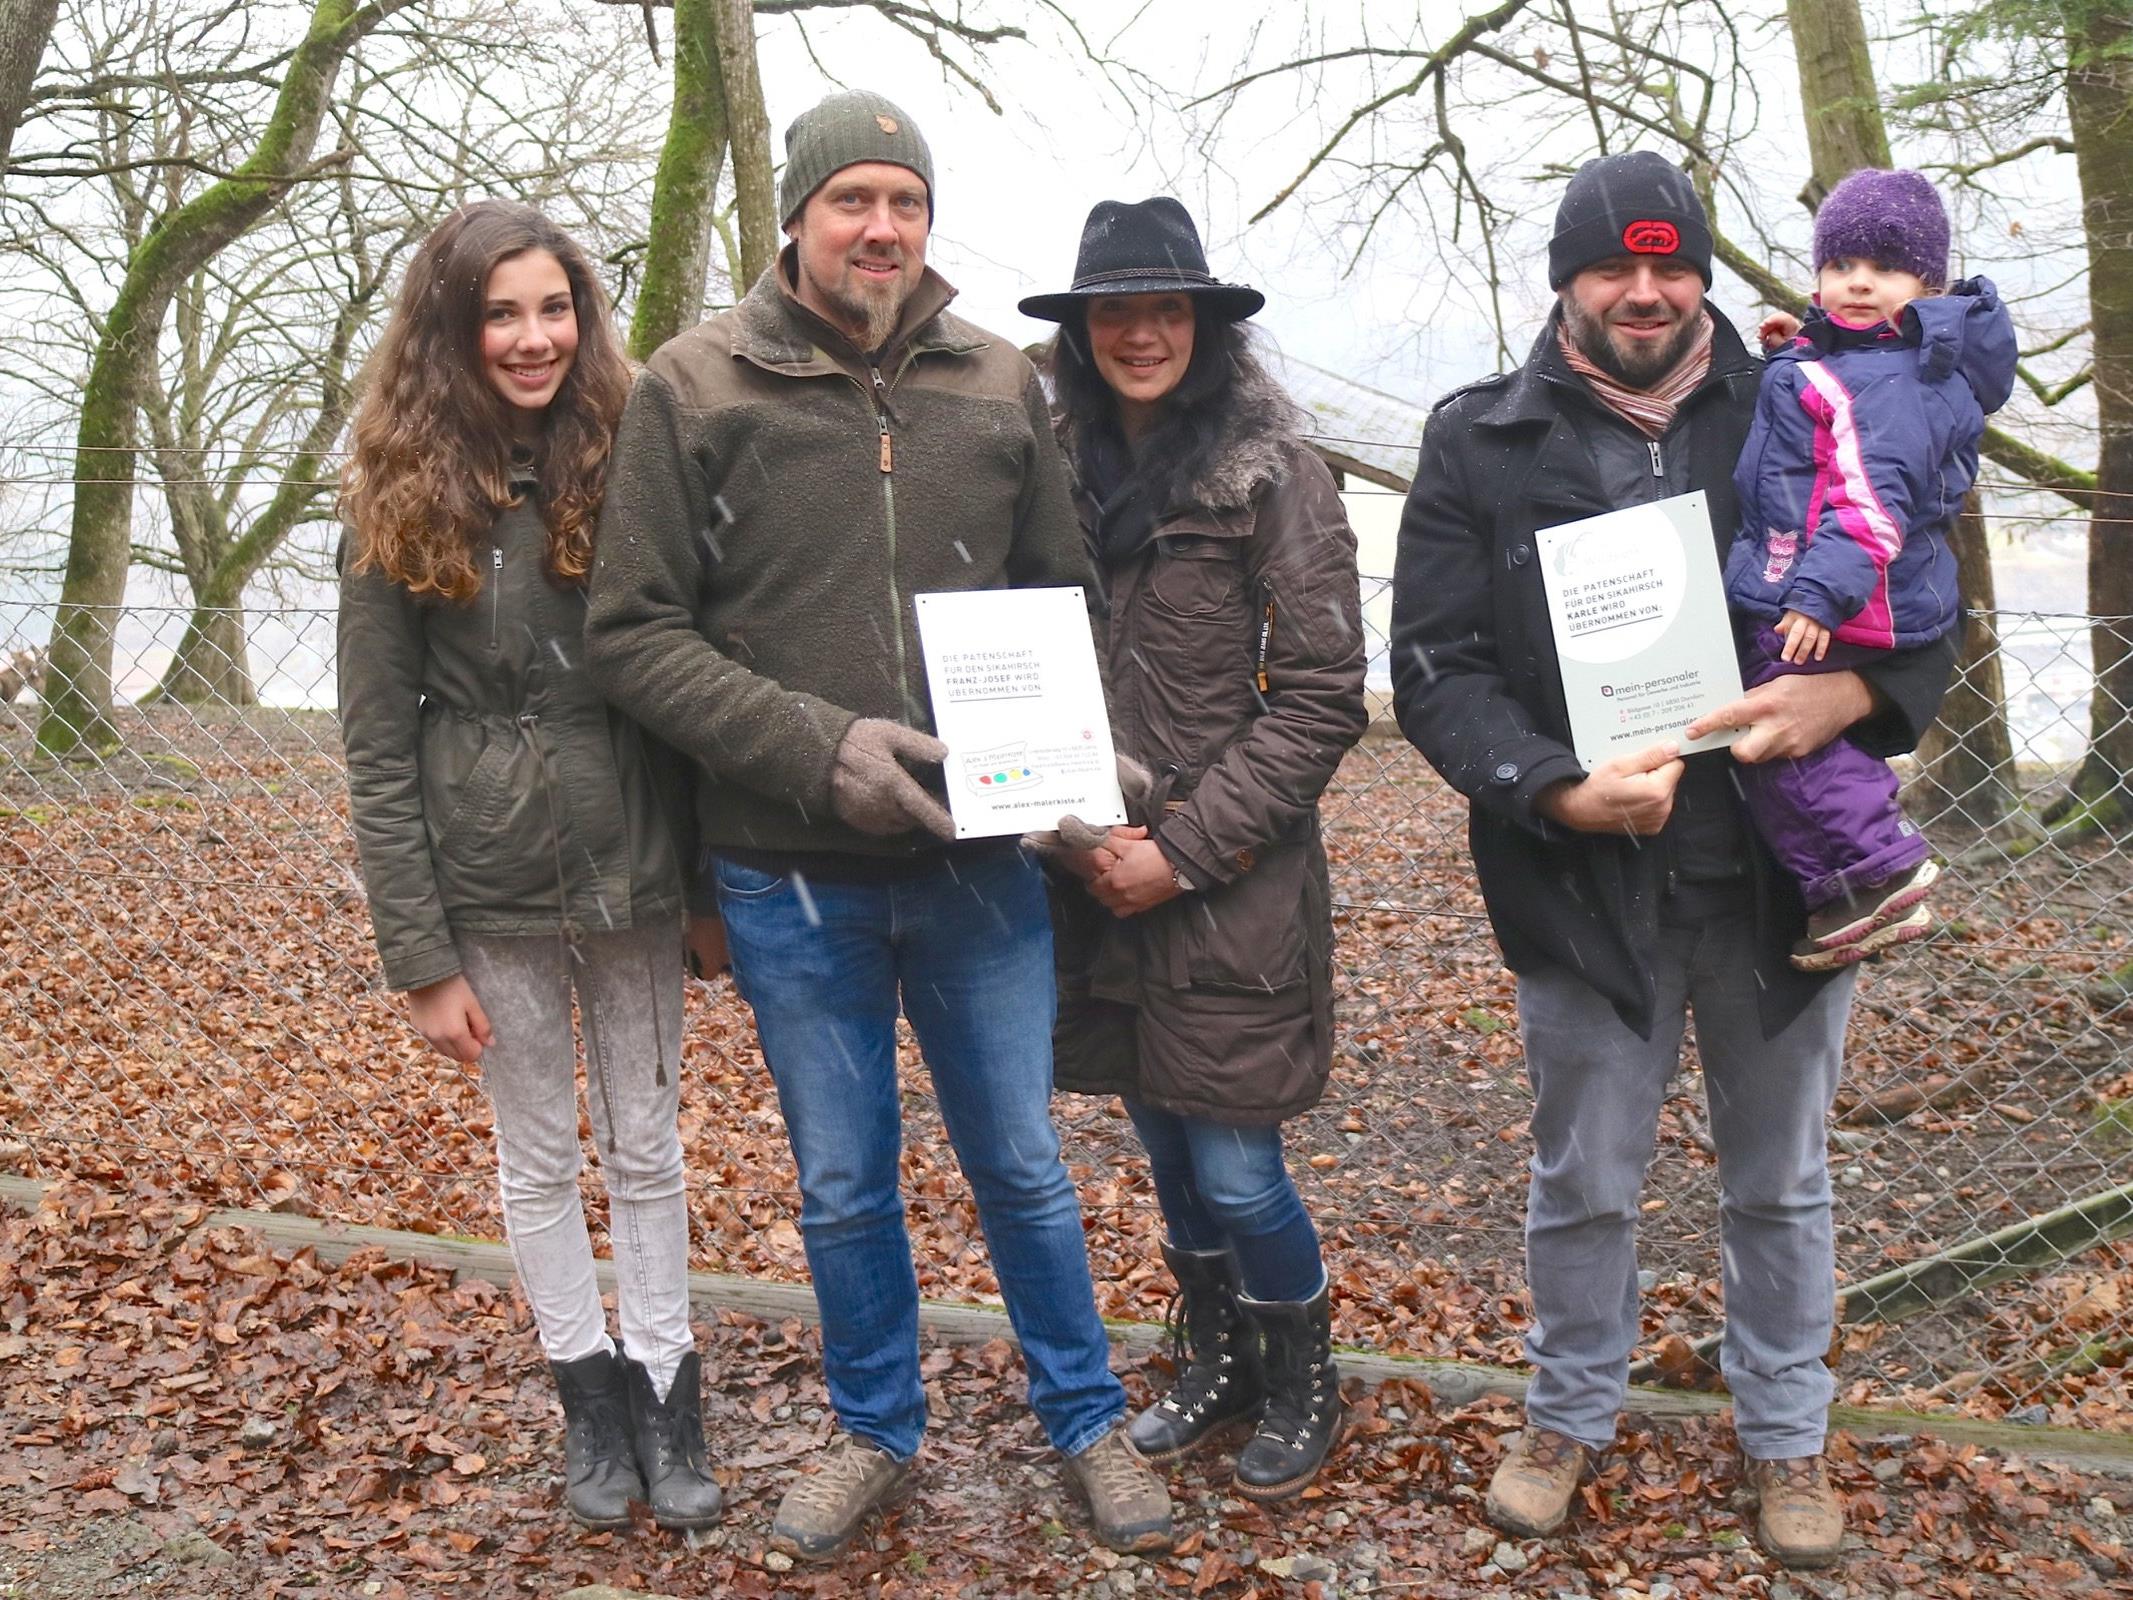 Großes Engagement zeigen die neuen Tierpaten für den Erhalt des Wildparks Feldkirch:  Madlene,  Alexander und Simone Tschofen sowie Matthias Graziadei mit Tochter Klara.